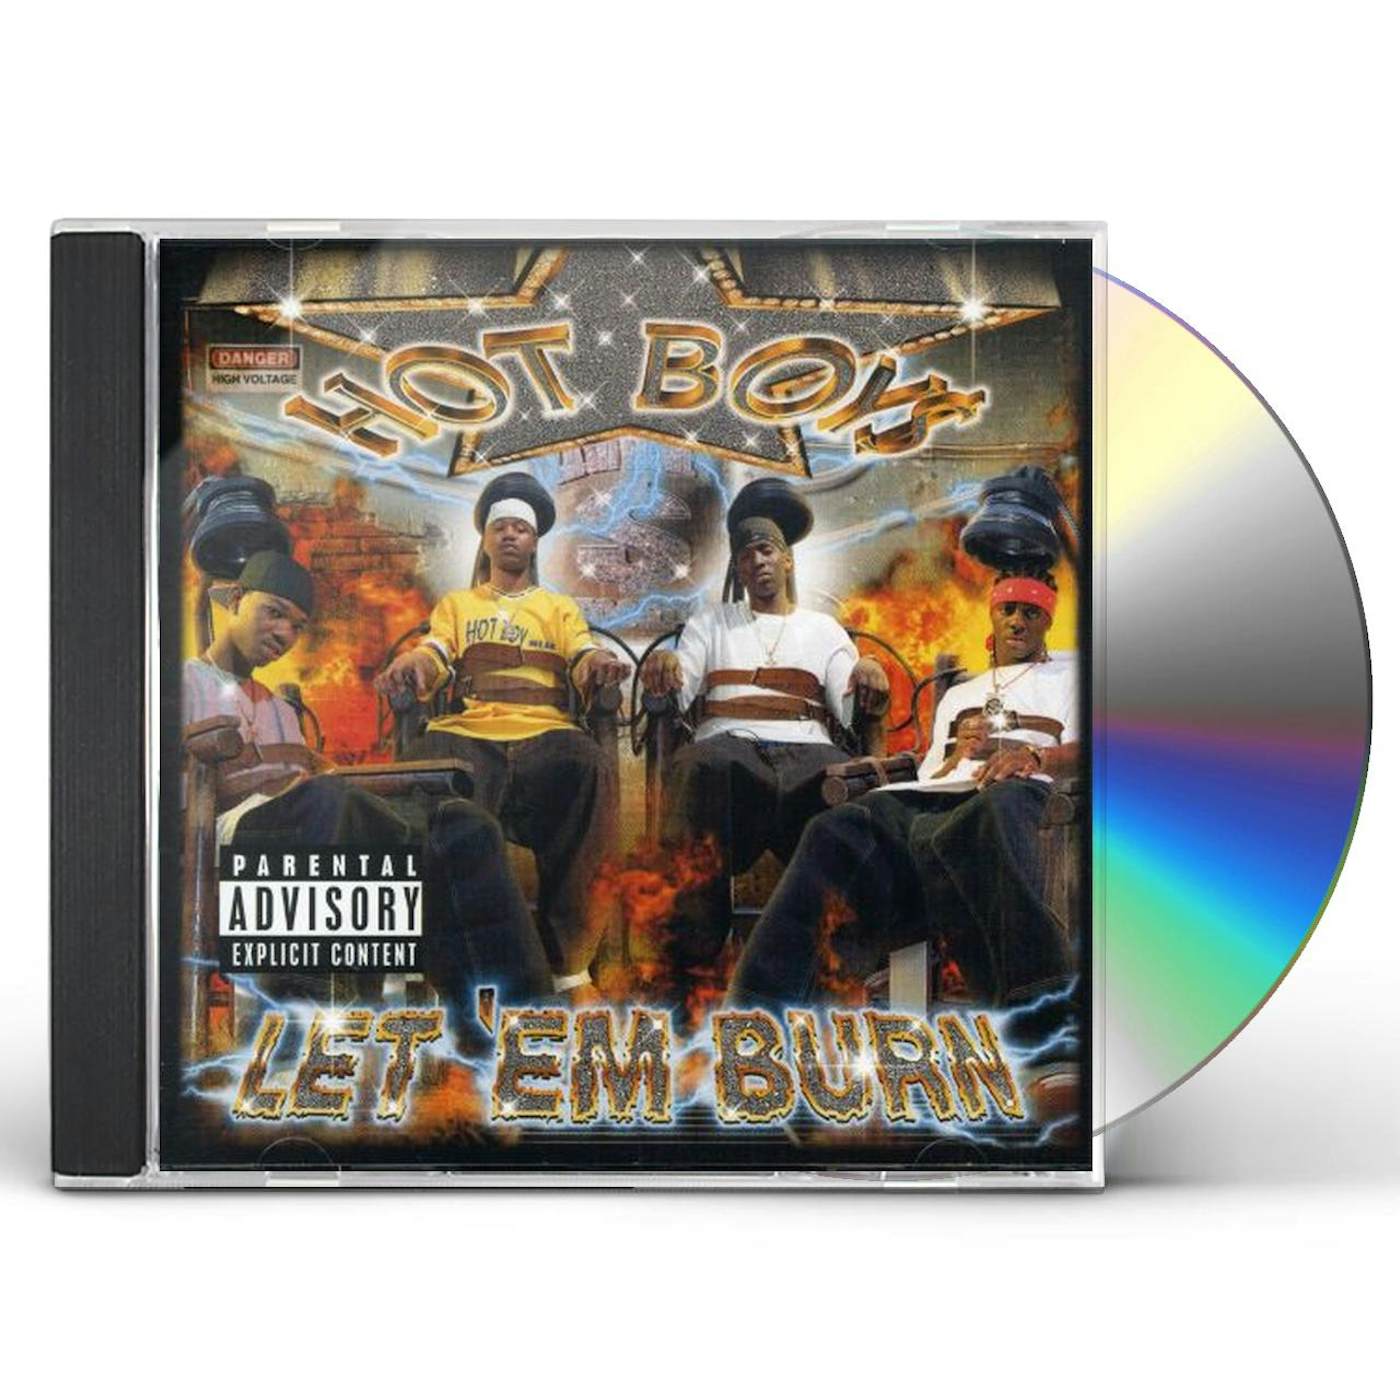 Hot Boys LET EM BURN CD